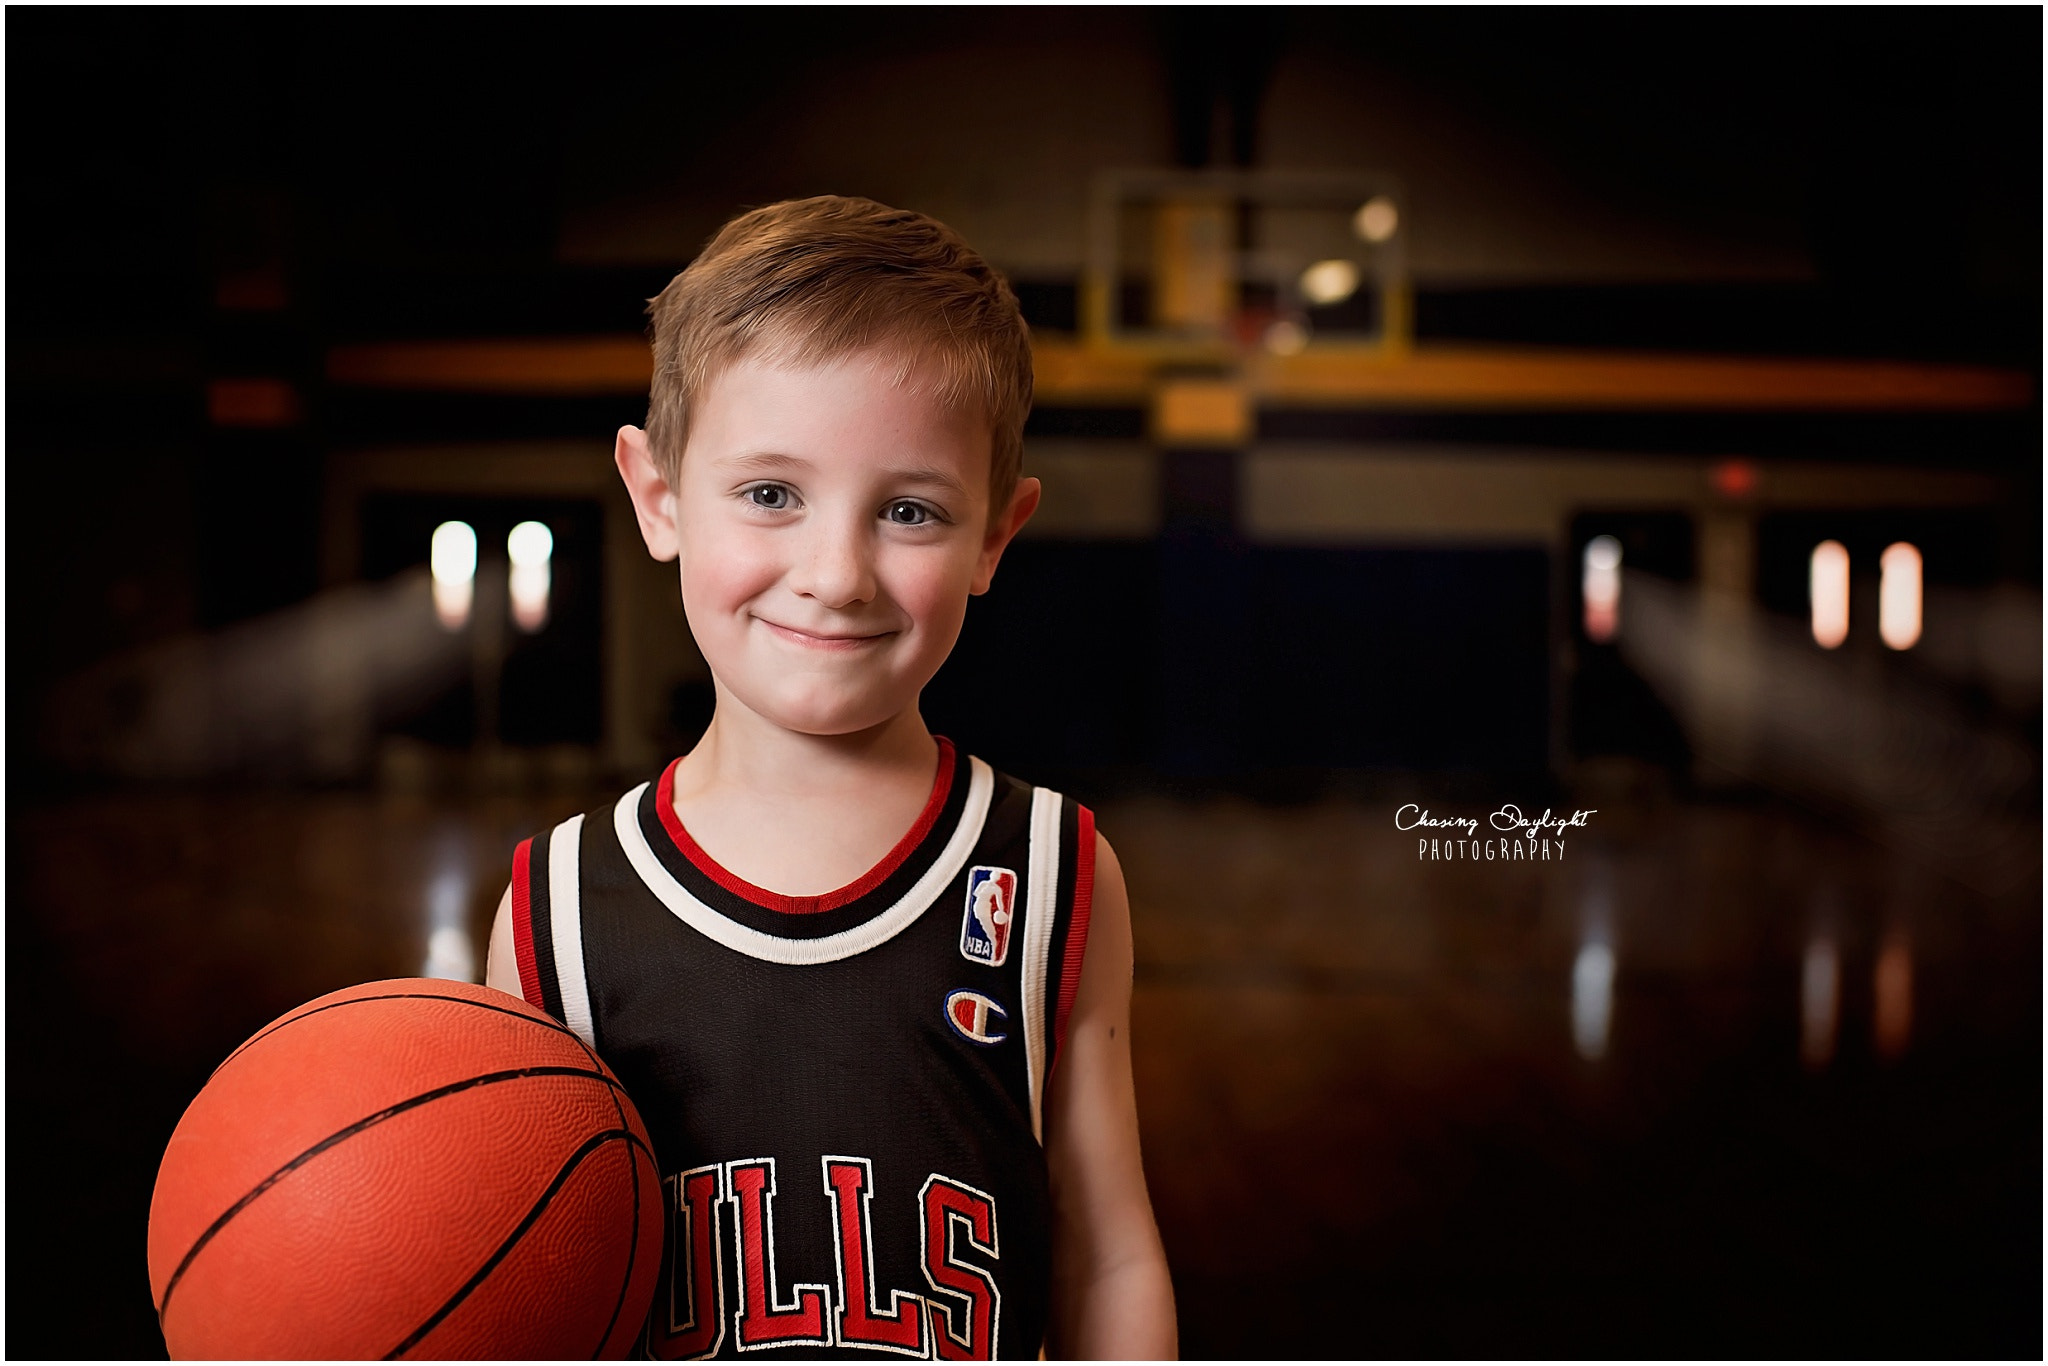 Nikon D4S + Nikon AF-S Nikkor 35mm F1.4G sample photo. Portrait child basketball photography